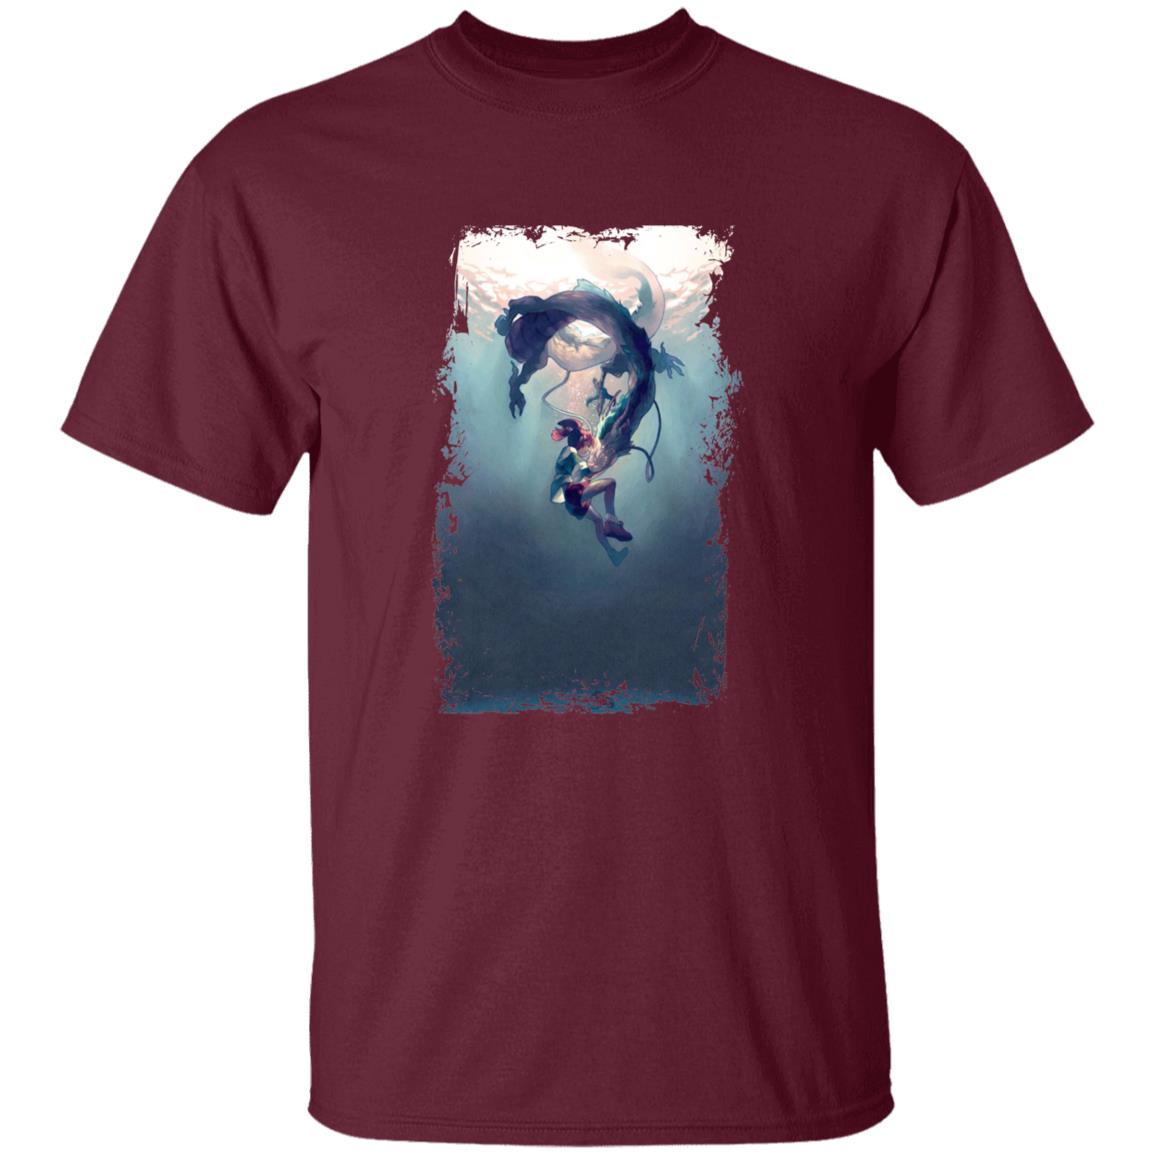 Spirited Away – Chihiro and Haku under the Water T Shirt